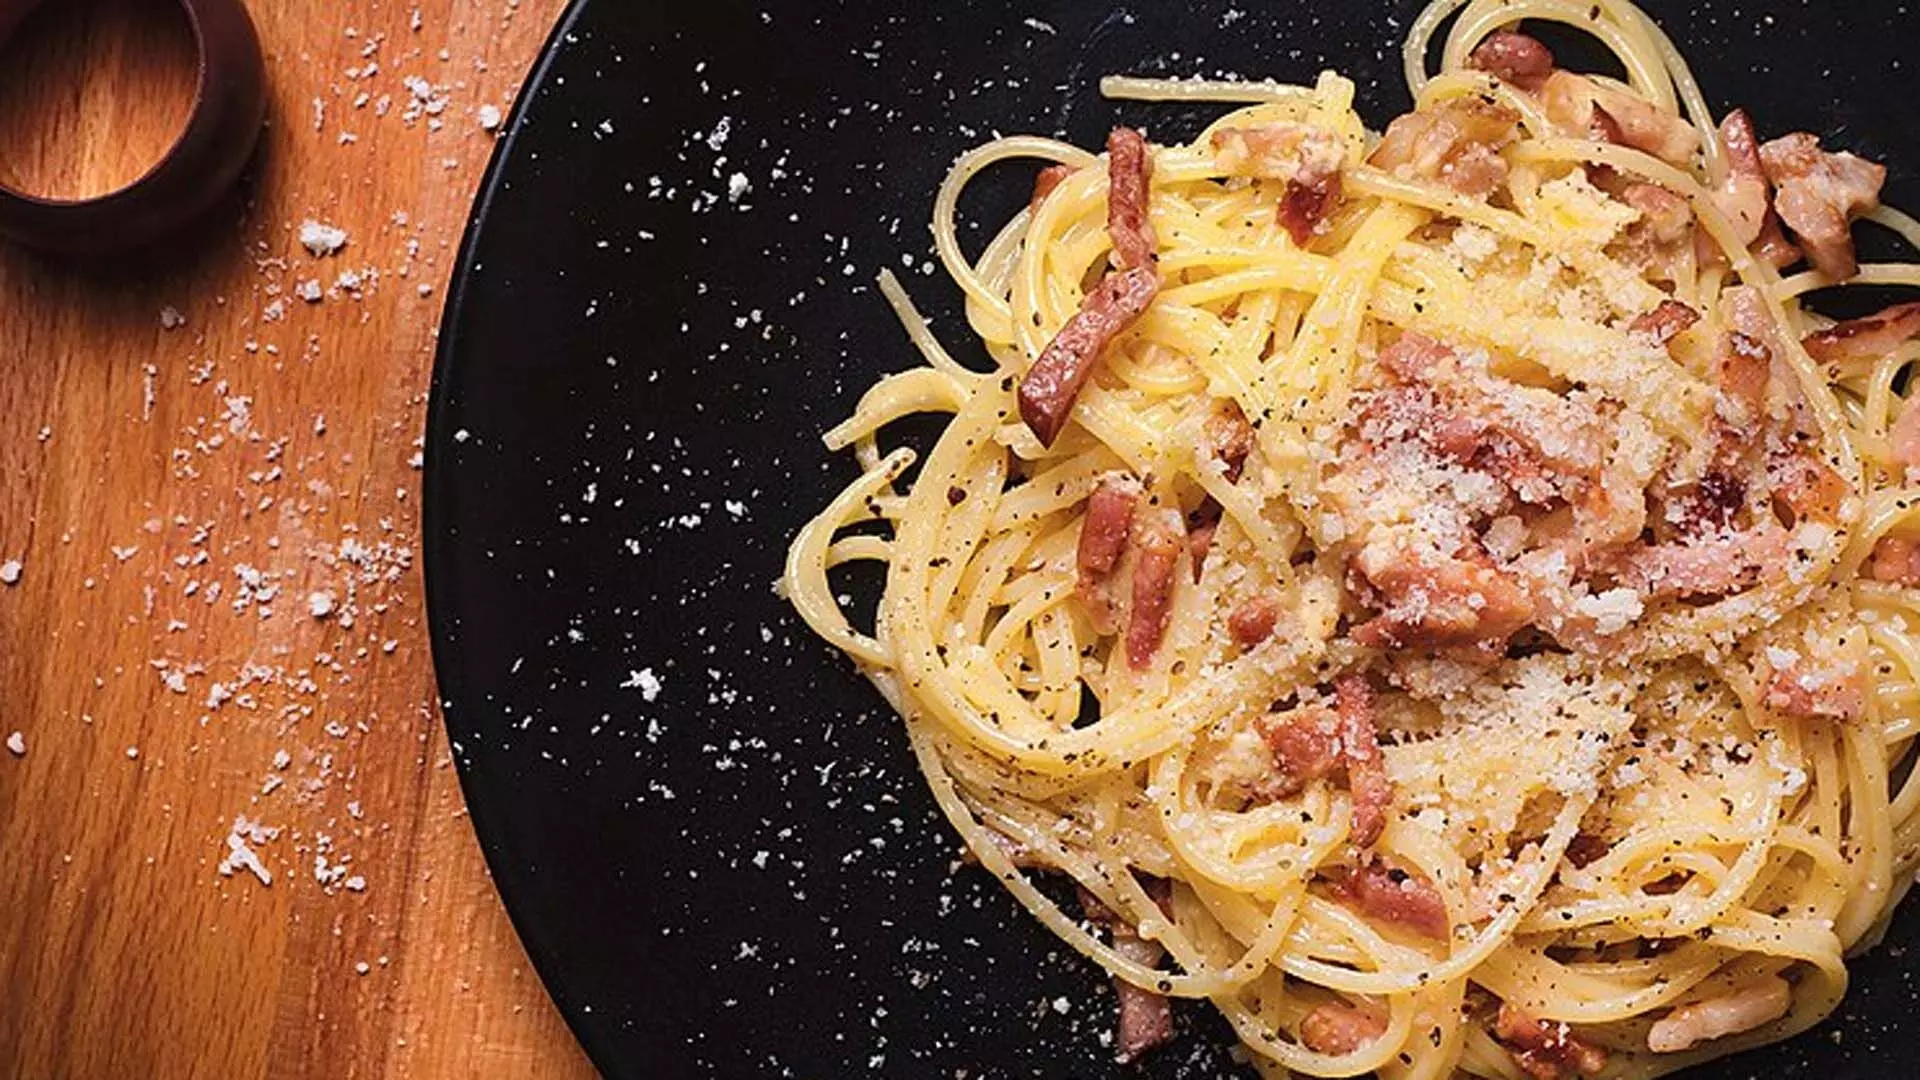 इटैलियन स्पेगेटी कार्बोनारा बनाने की त्वरित और आसान विधि